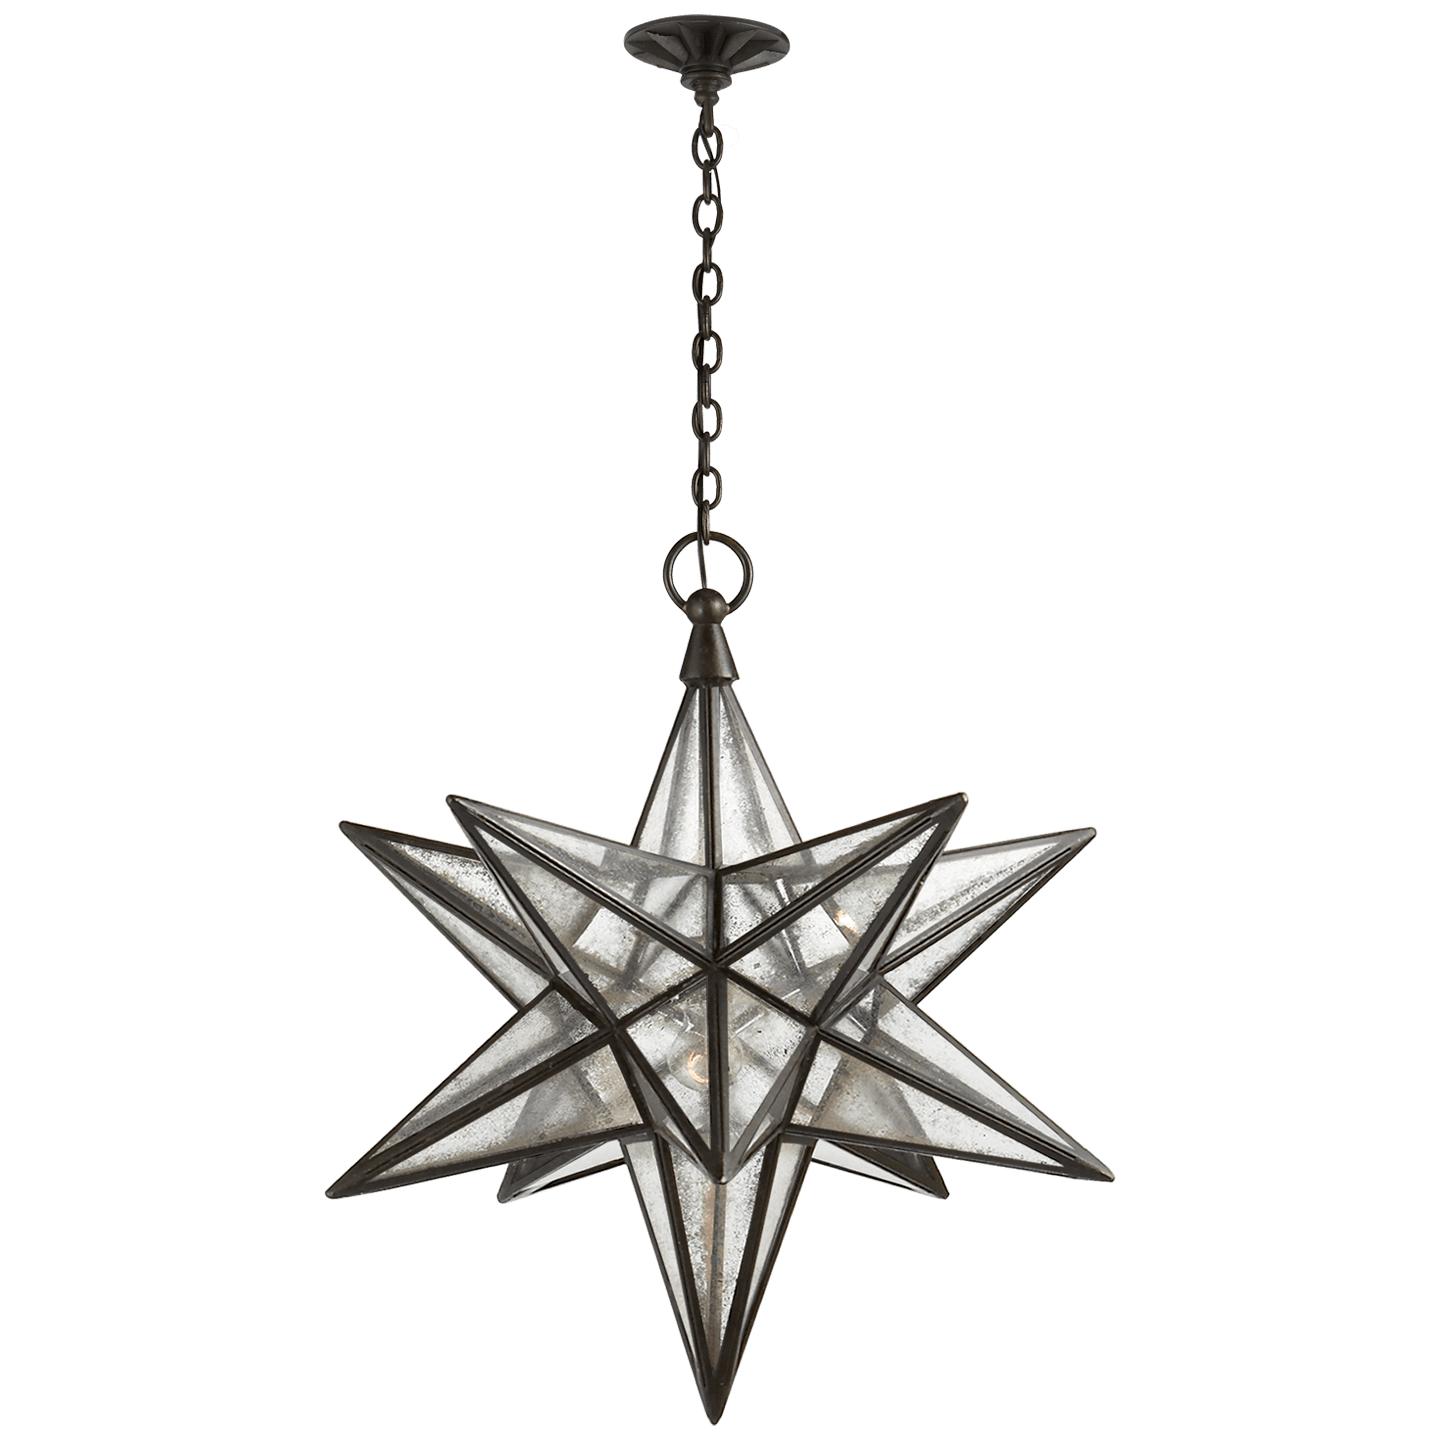 Купить Подвесной светильник Moravian Large Star Lantern в интернет-магазине roooms.ru